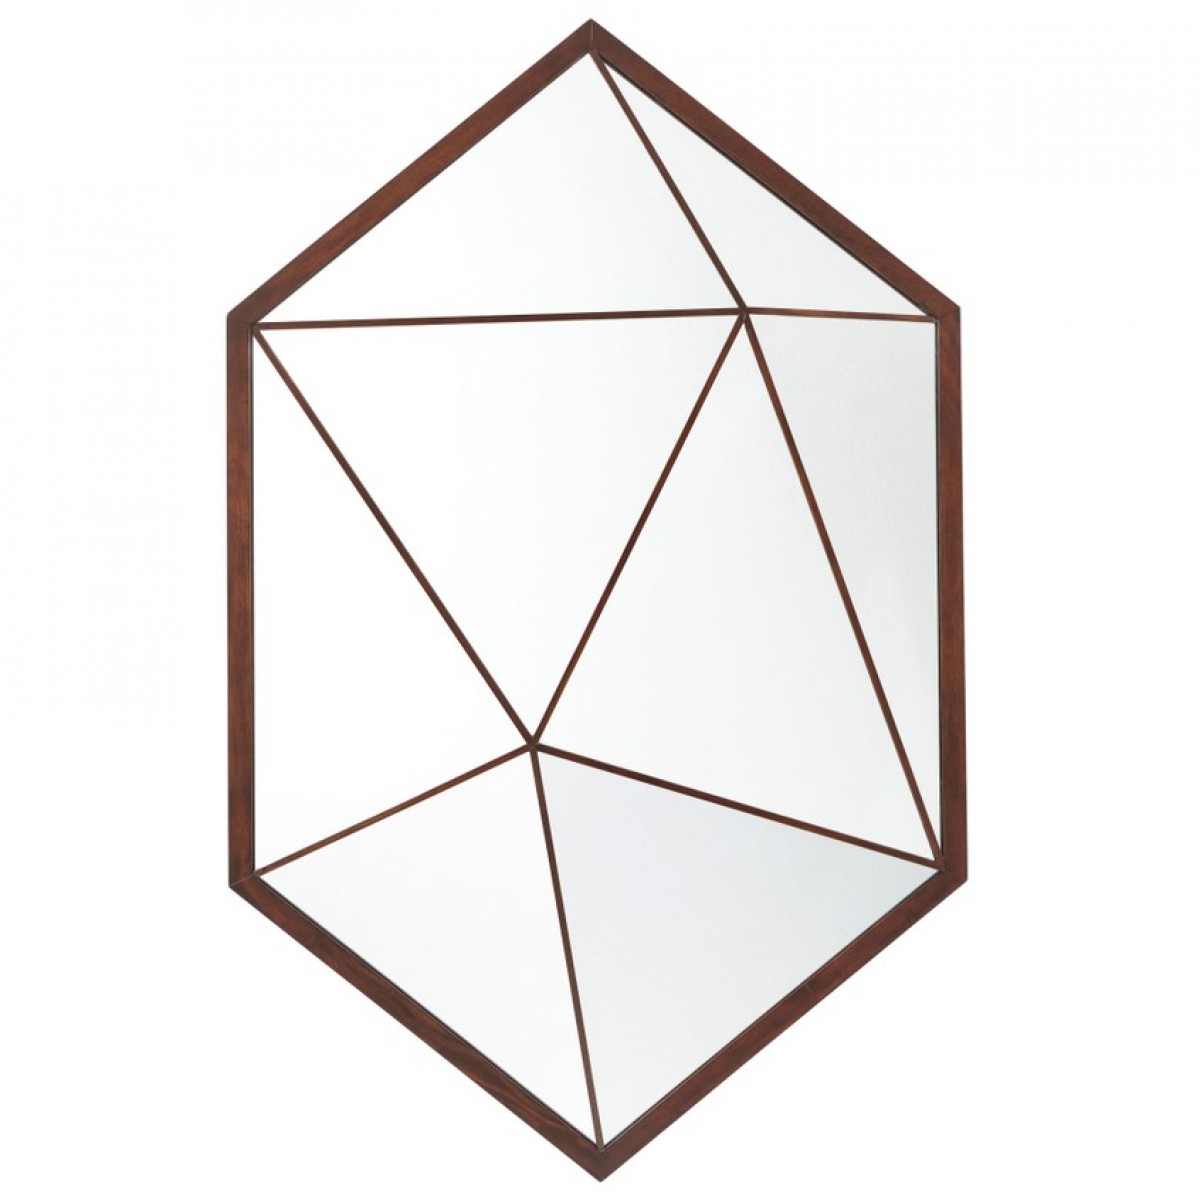 Vlad Hexagonal Wall Mirror | Highlight image